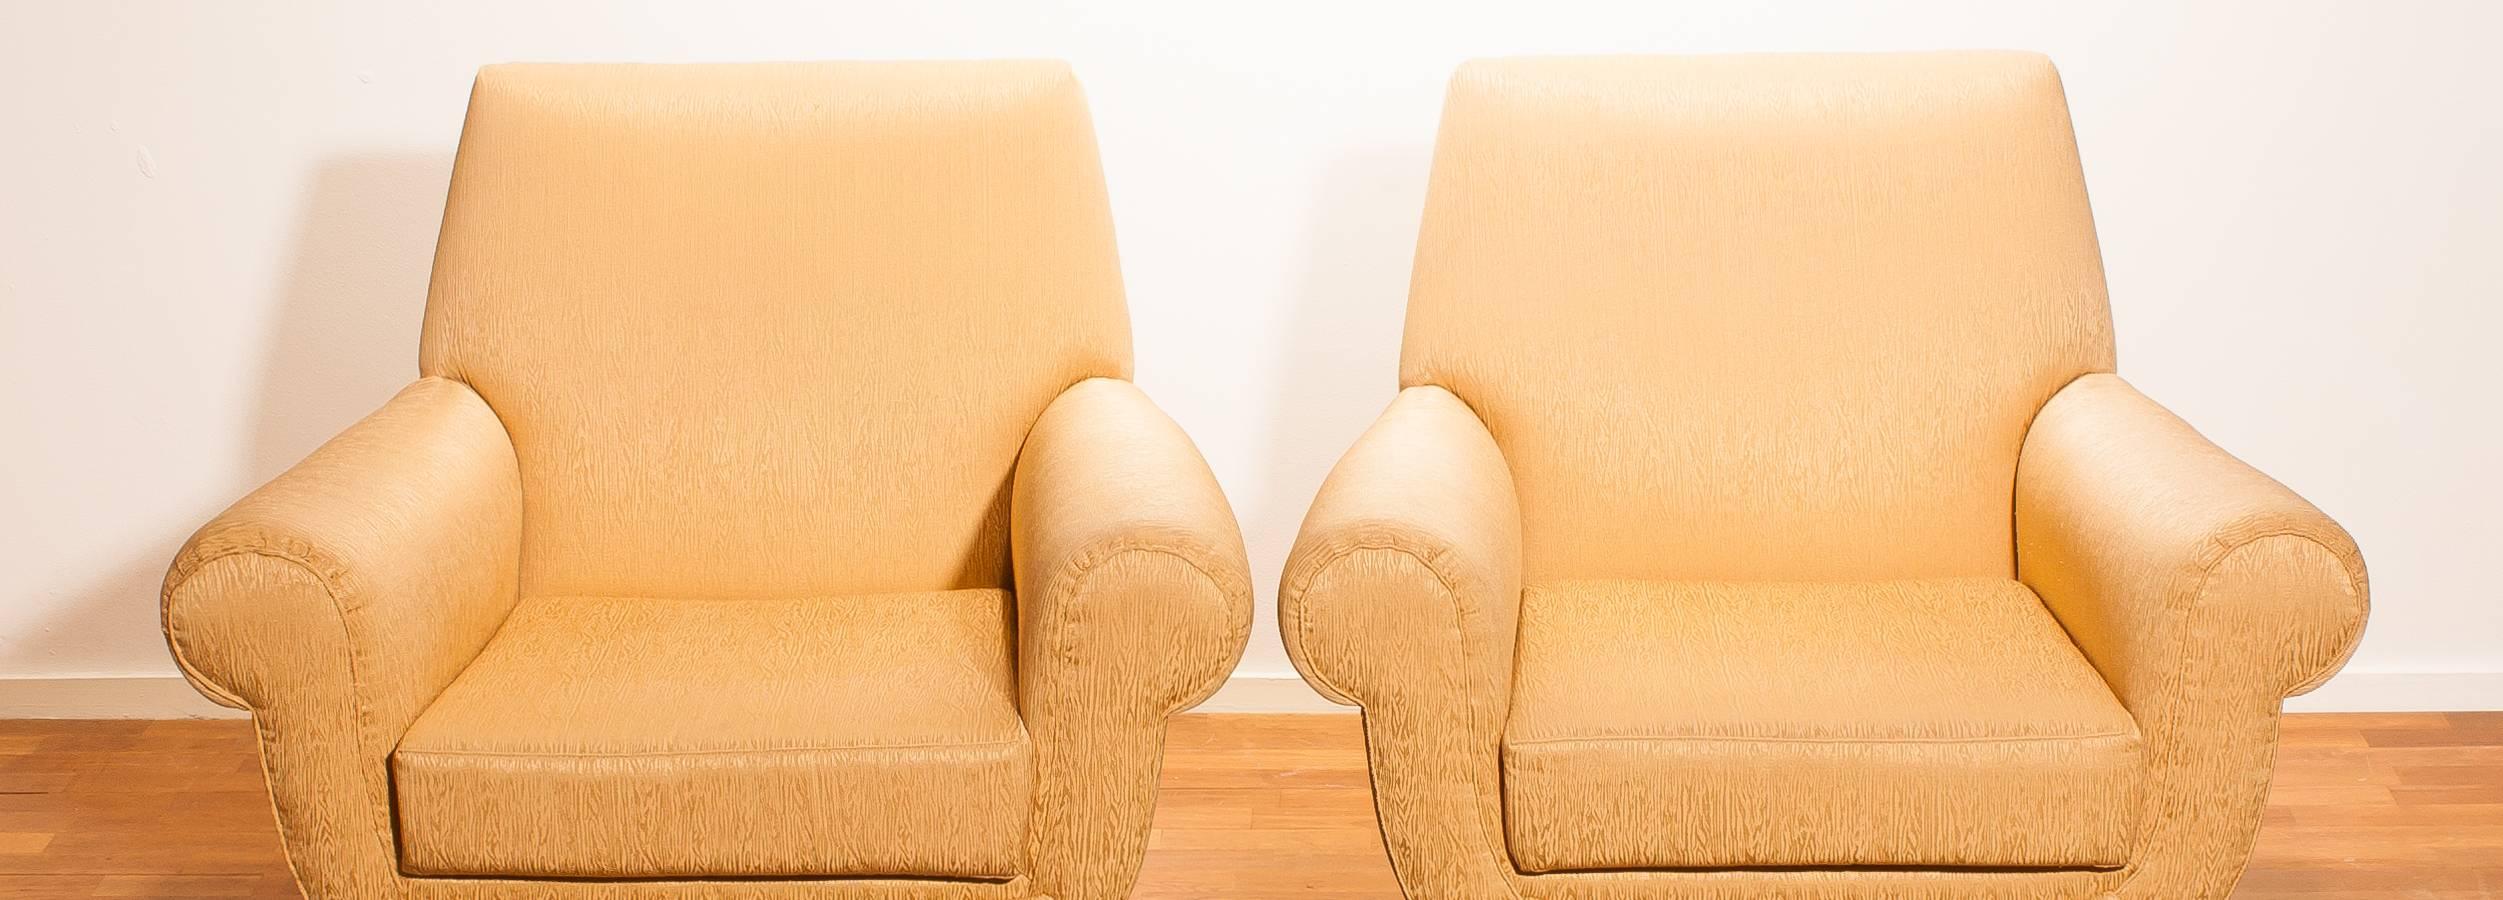 Golden Jacquard Upholstered Easy Chairs by Gigi Radice for Minotti, Brass Legs. 9